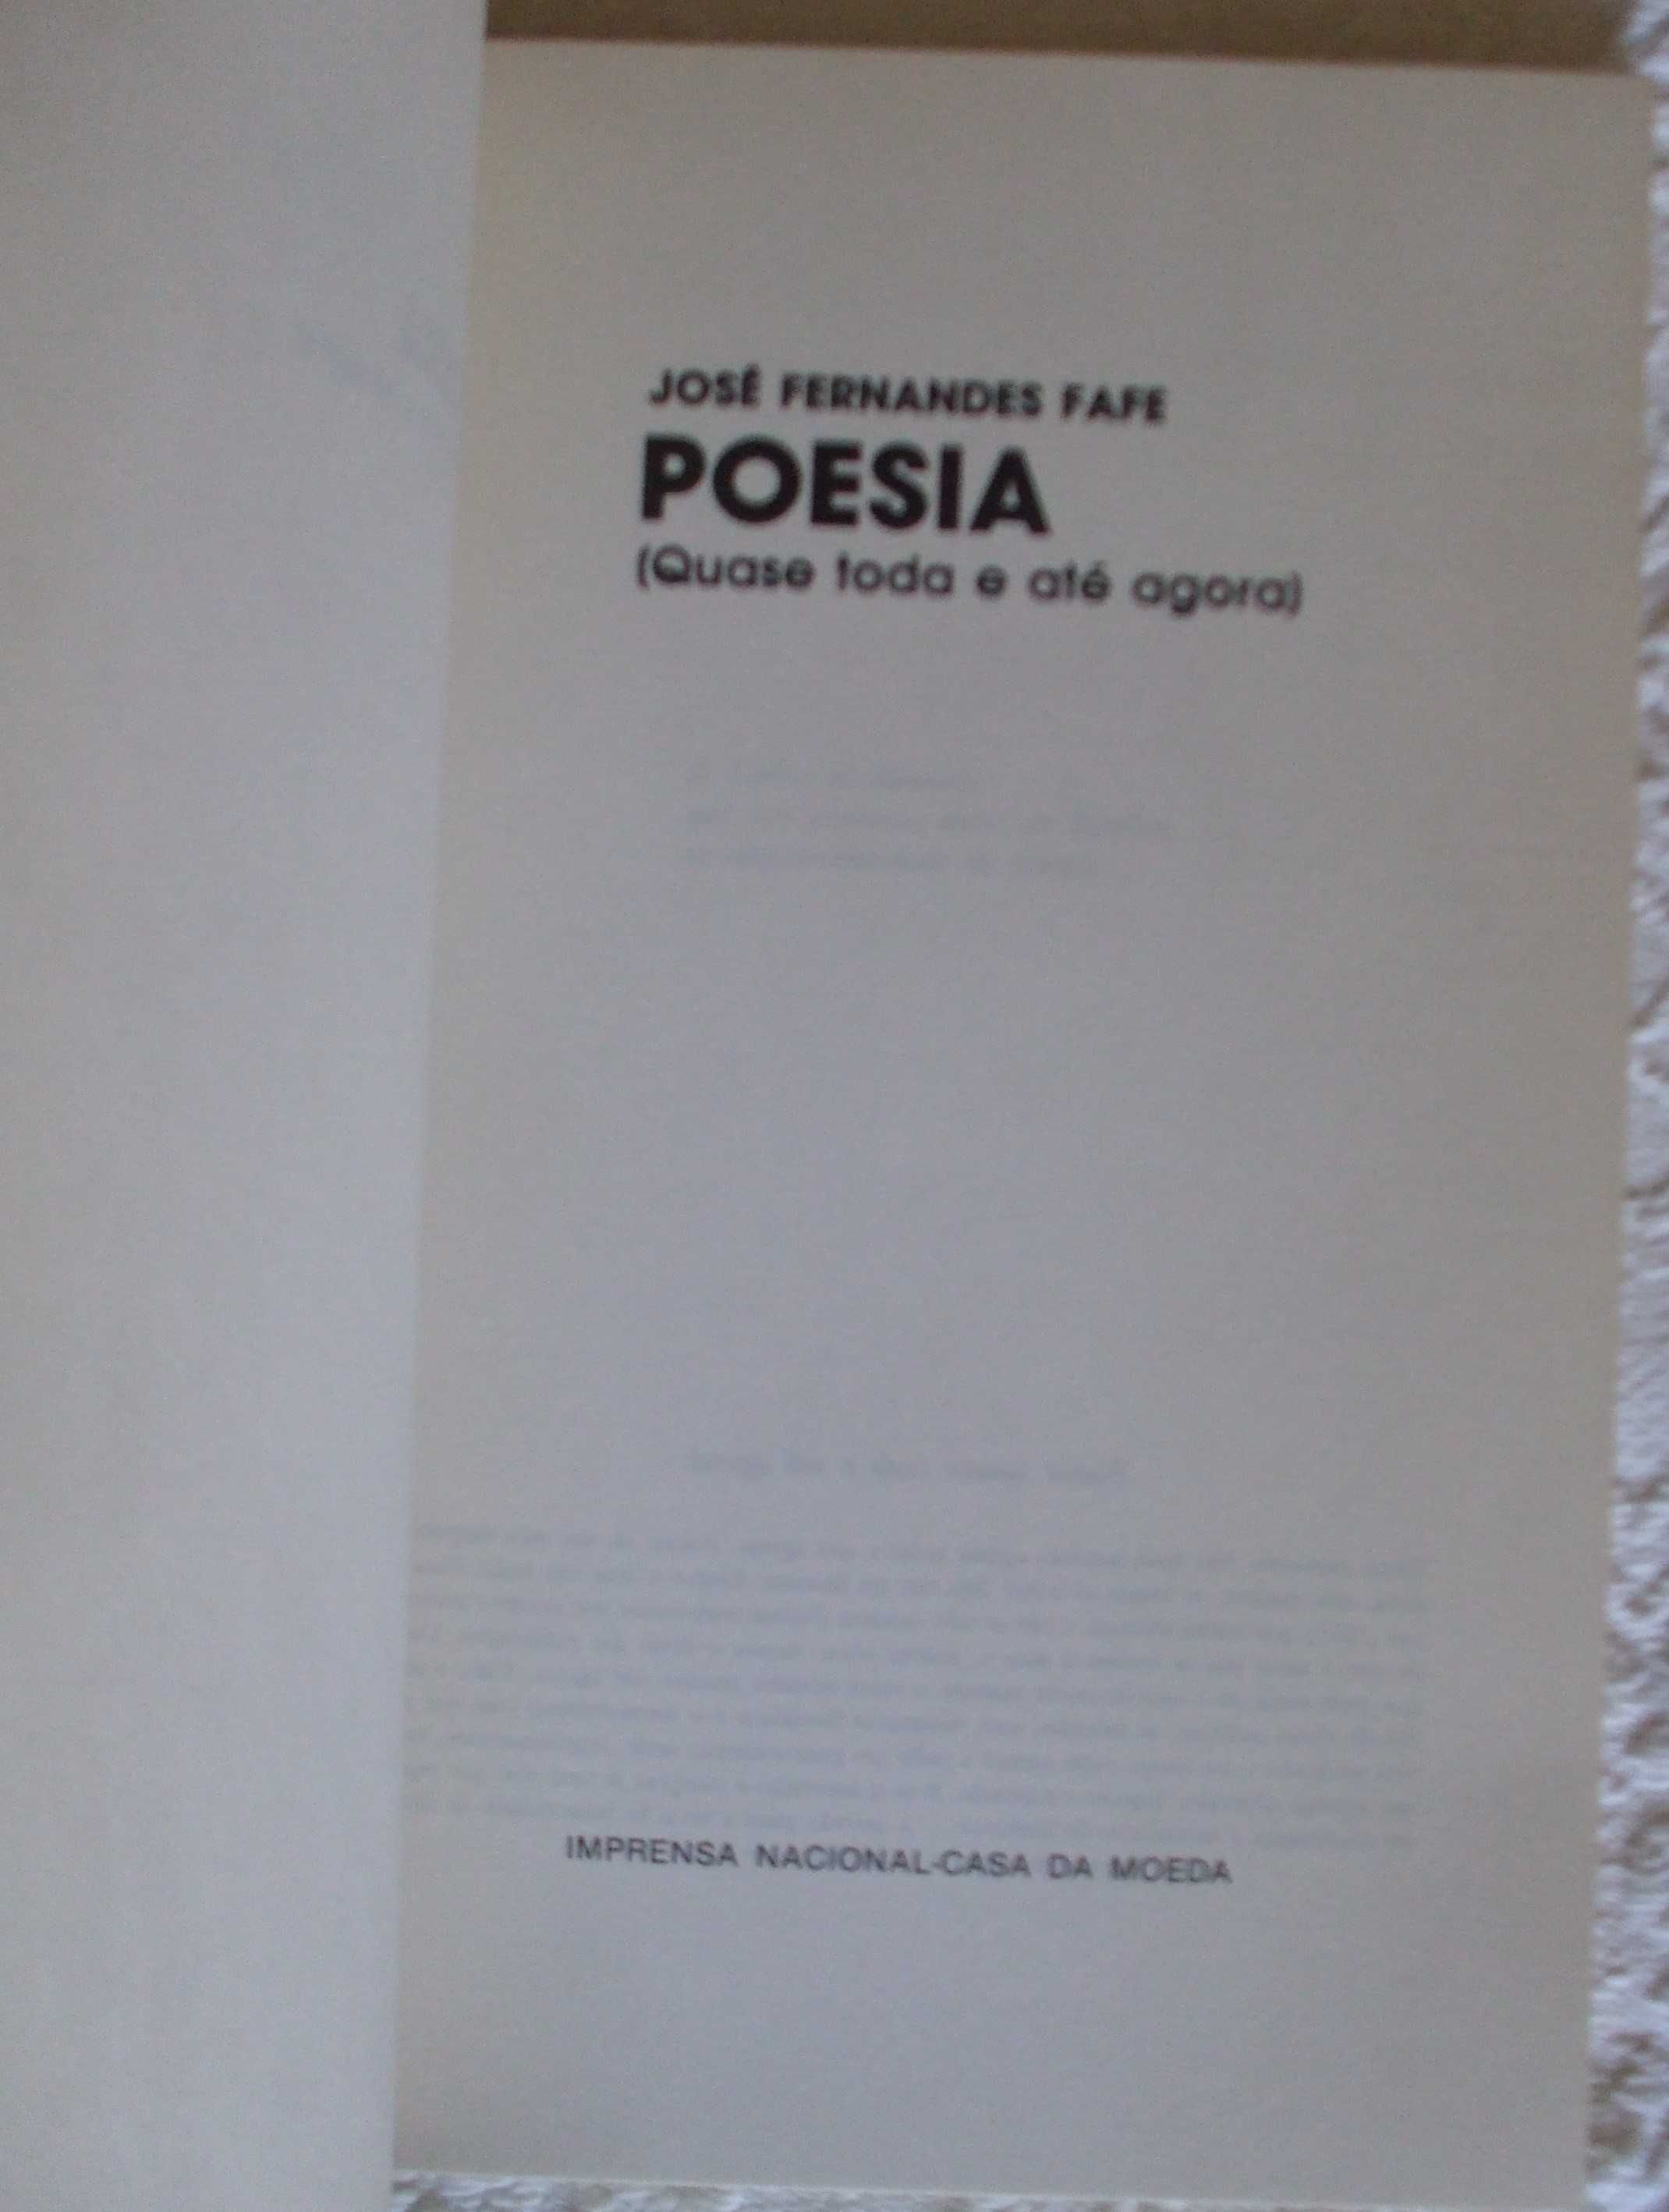 Poesia (quase toda e até agora), José Fernandes Fafe